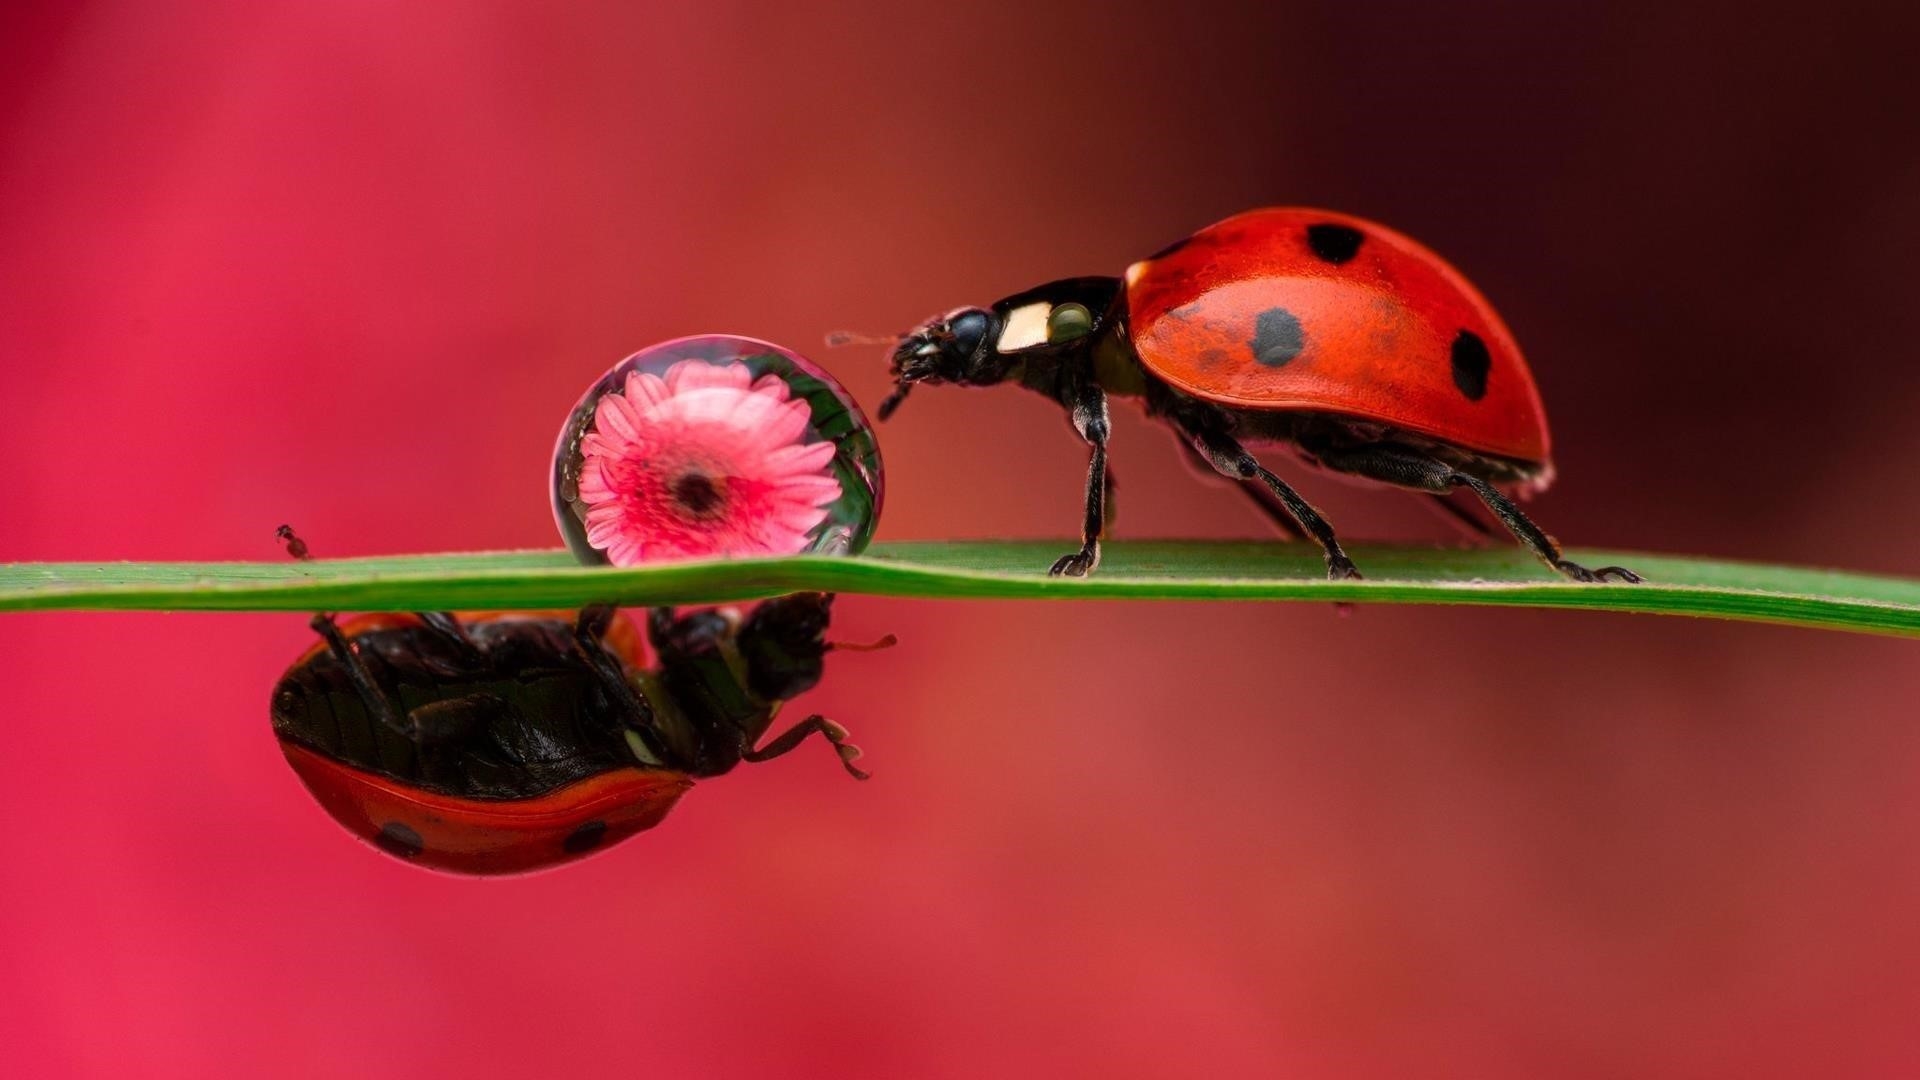 Красное насекомое божья коровка на зеленом листе на красно розовом фоне животные обои скачать